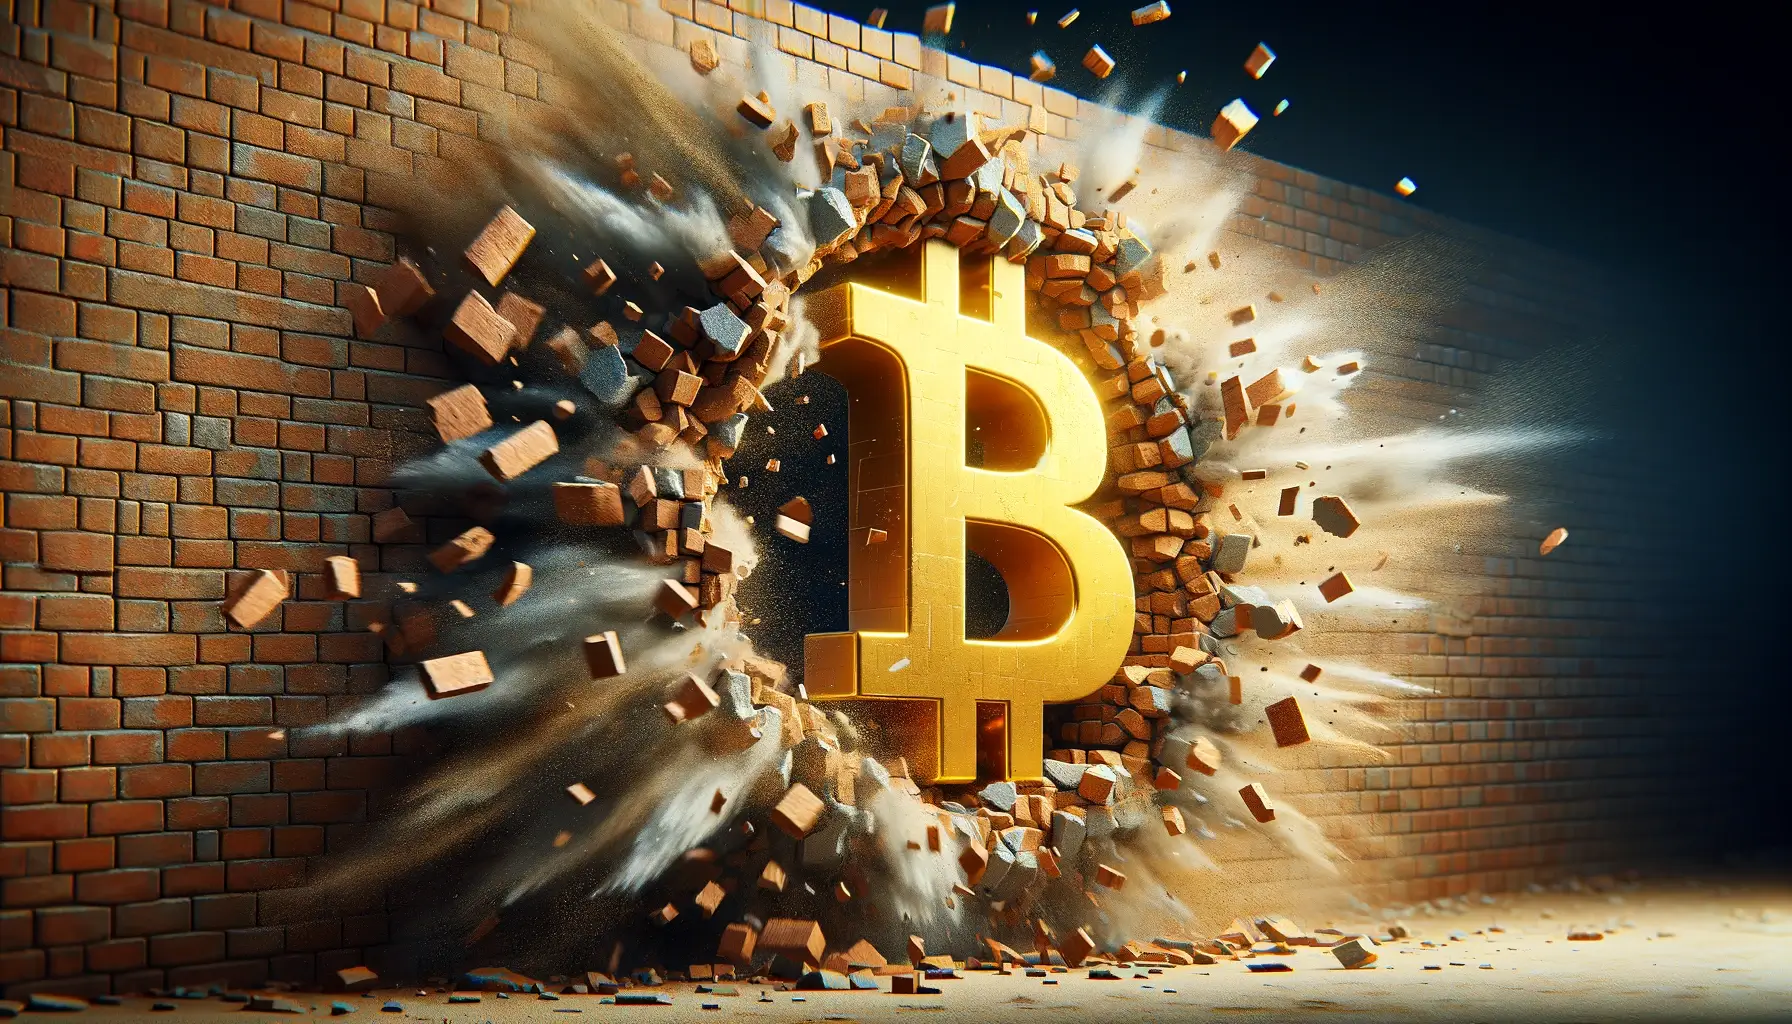 El símbolo dorado de Bitcoin atraviesa un muro de ladrillos